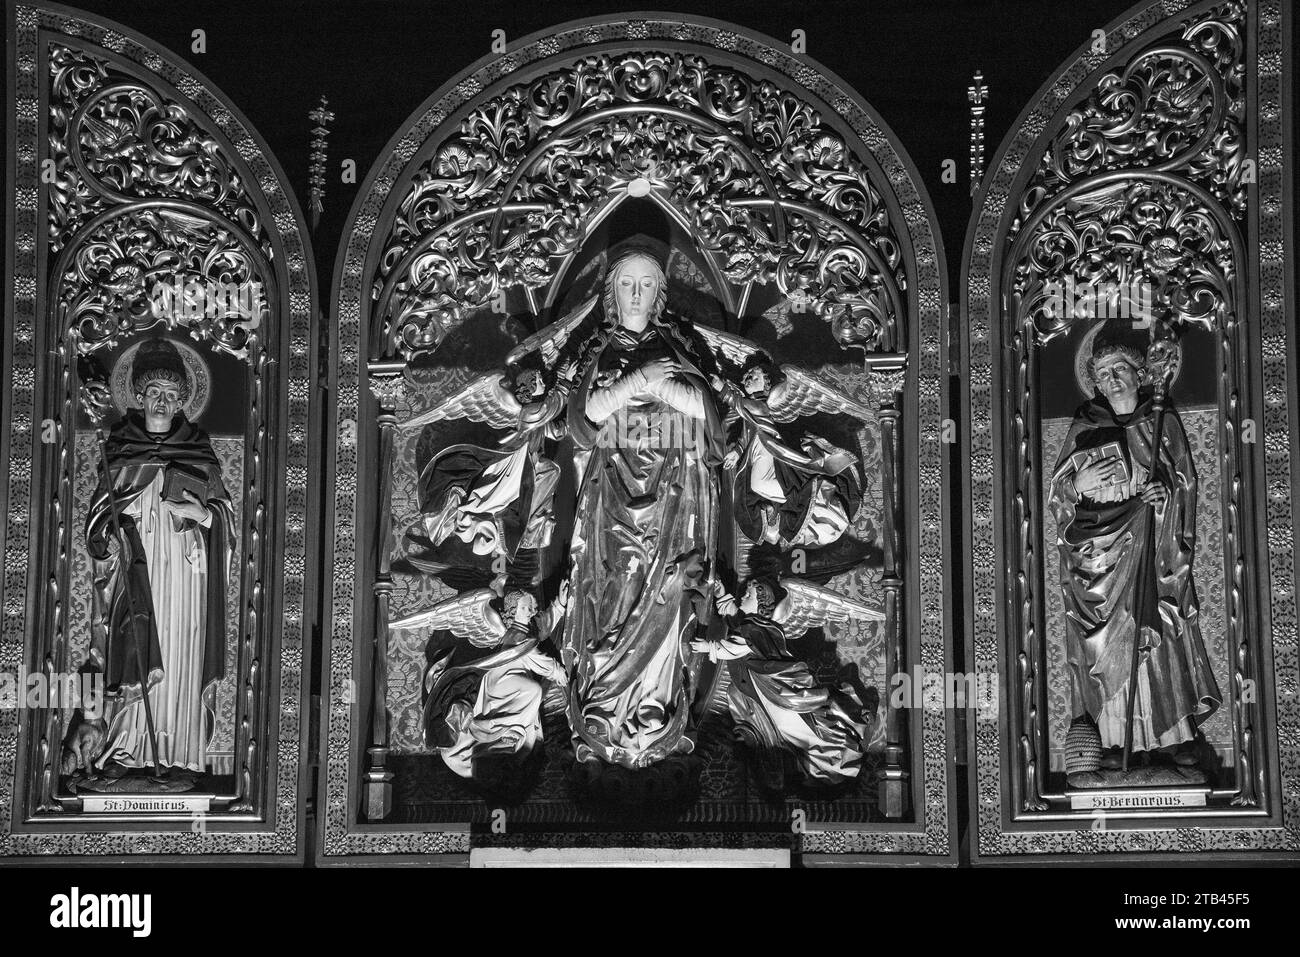 Mariä Himmelfahrt in der Kathedrale St. Stephan in Metz, Frankreich. Religiöse Kunstgeschichte. Schwarzweißes historisches Foto Stockfoto